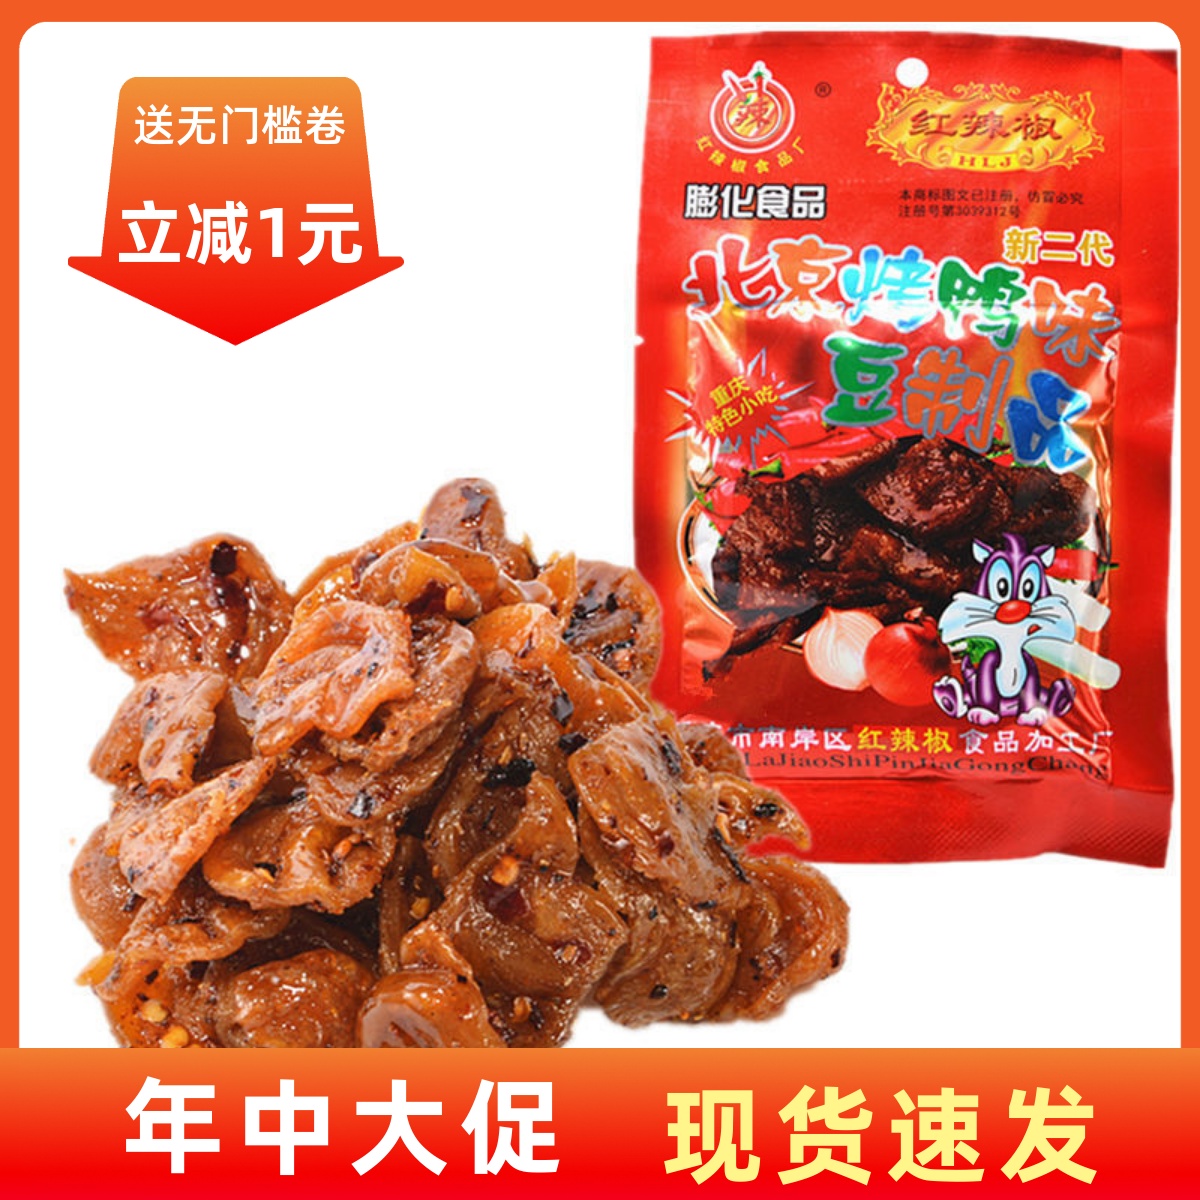 【现货即发】重庆特产红辣椒 北京烤鸭33克  烧烤辣条 素食 8090